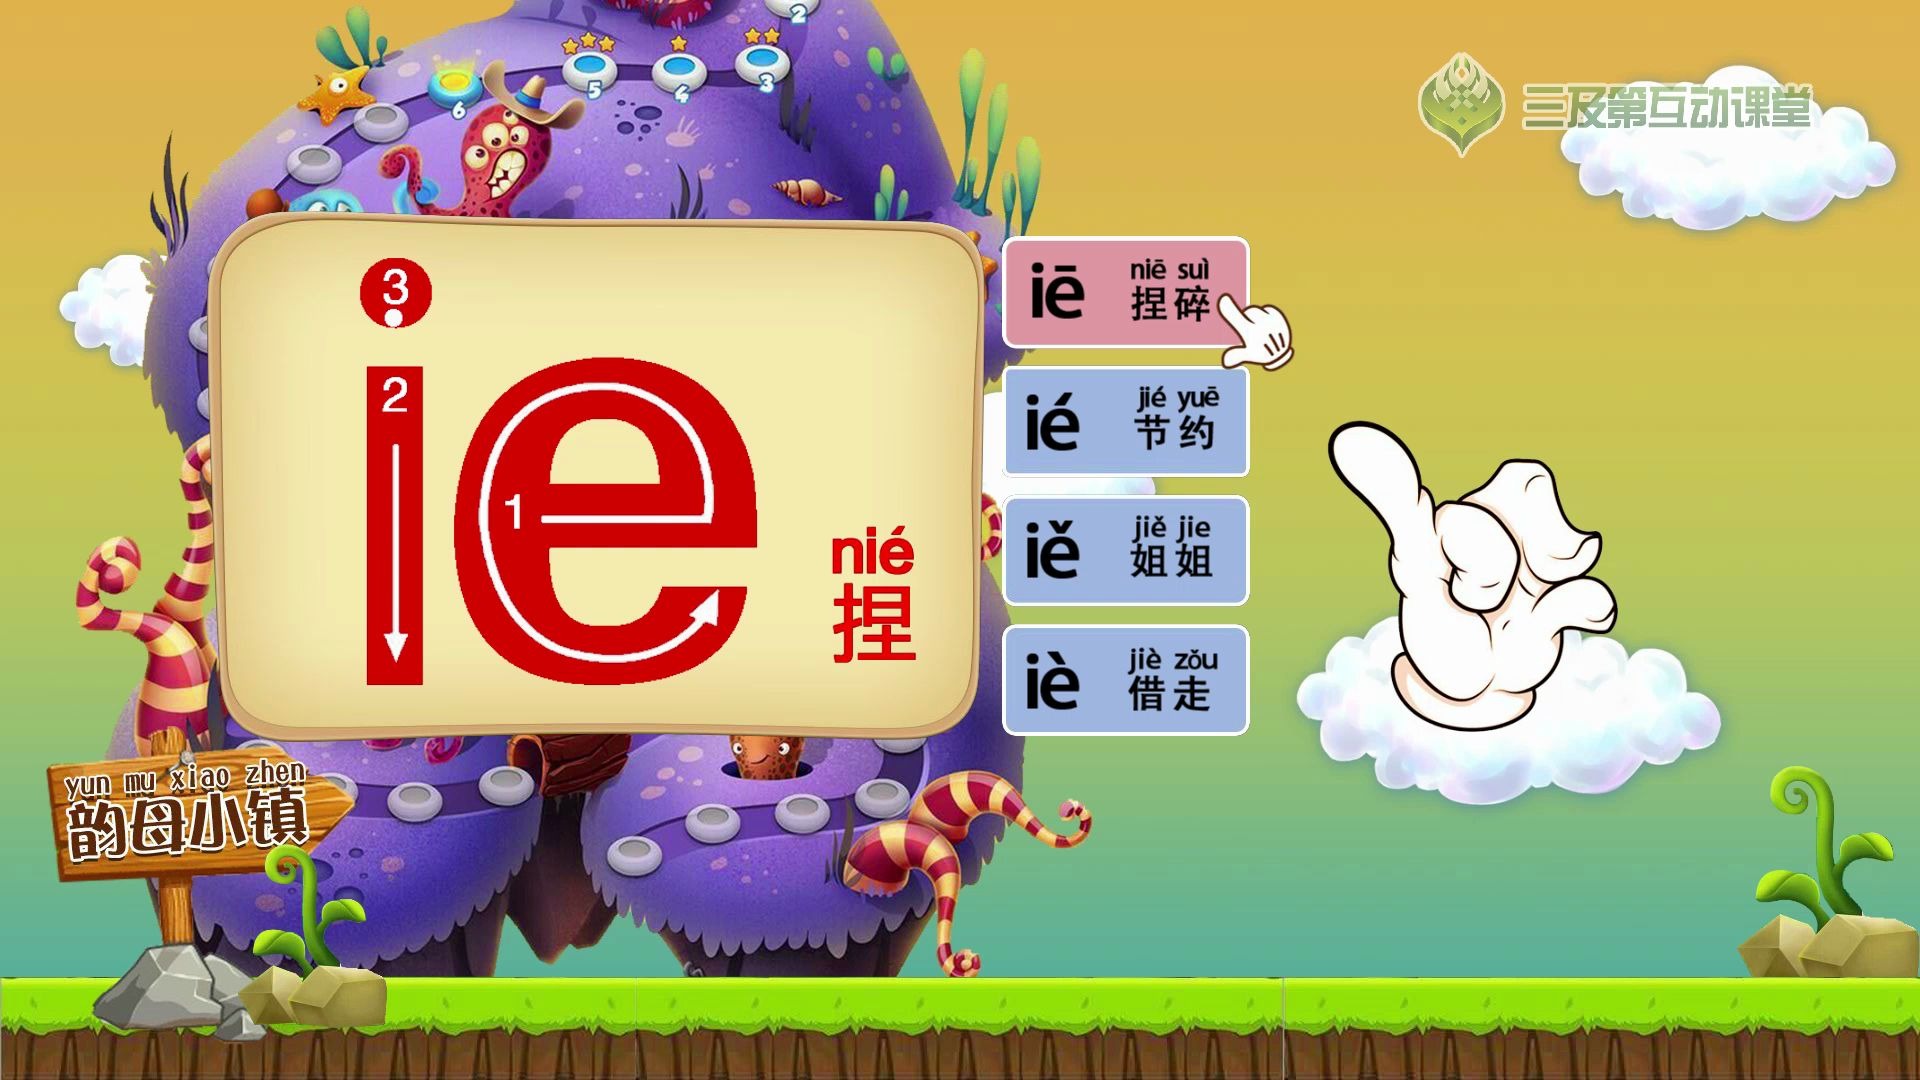 【学前必备】拼音字母表之韵母ie,让小孩看动画学拼音